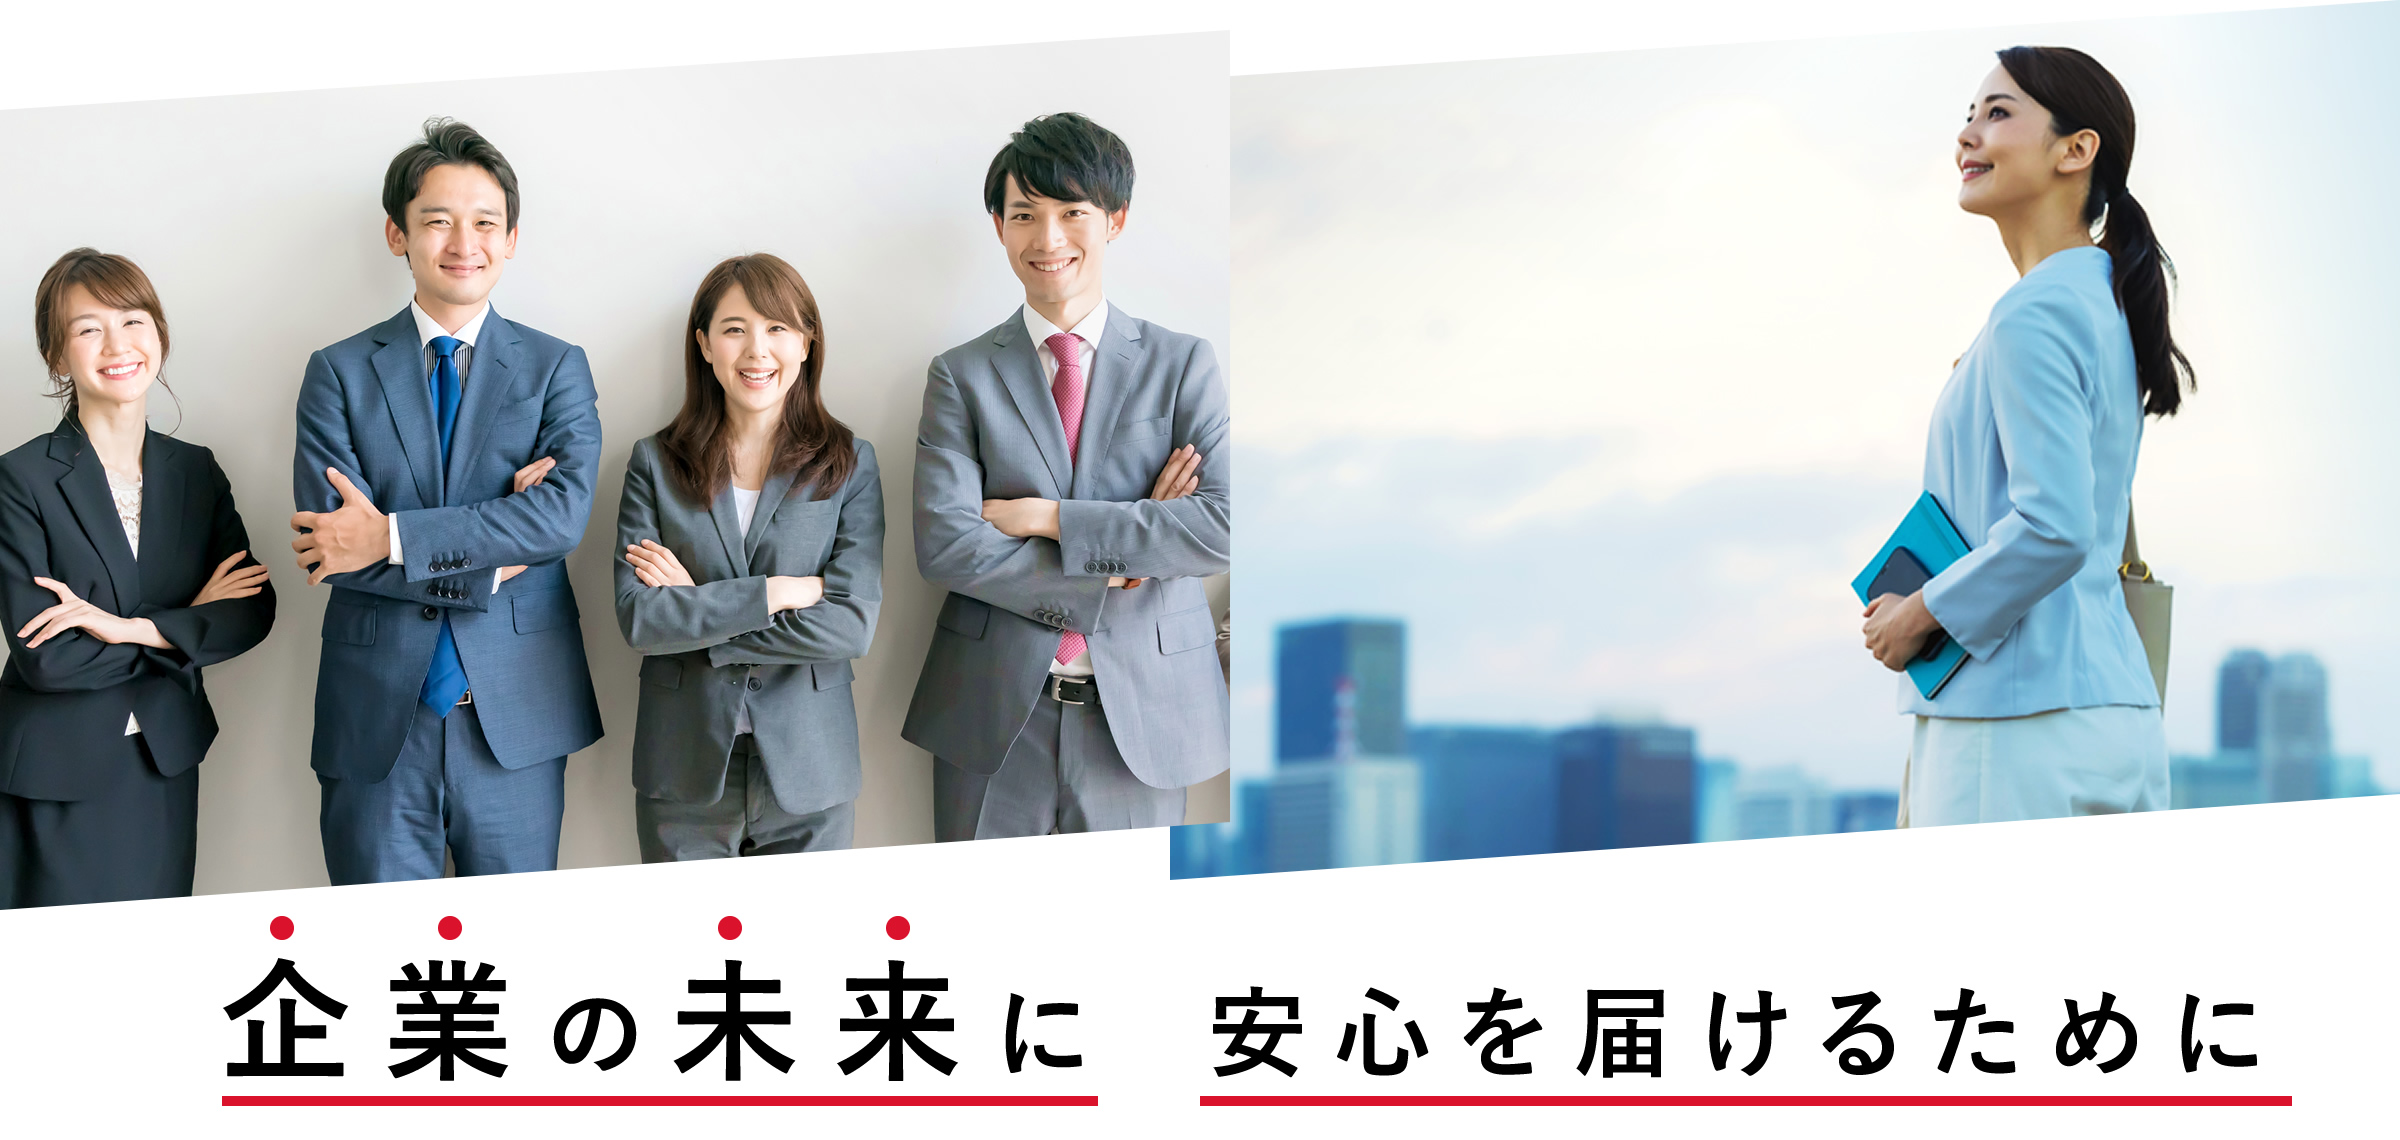 長崎市・諫早市の税理士事務所 ネクスト・プラス求人サイト 企業の未来に安心を届けるために